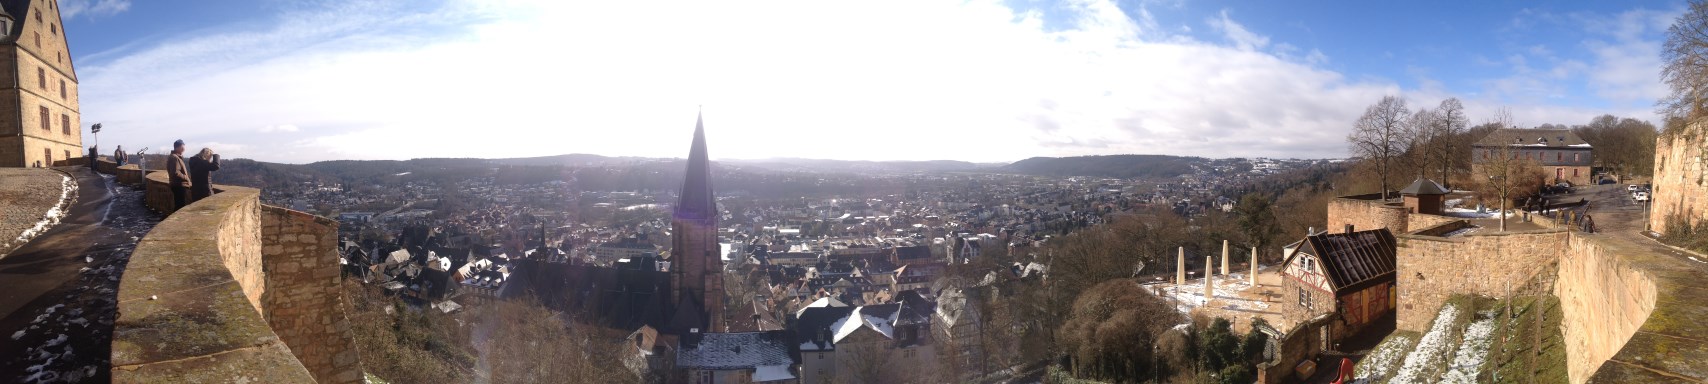 Marburg vom Landgrafenschloss aus